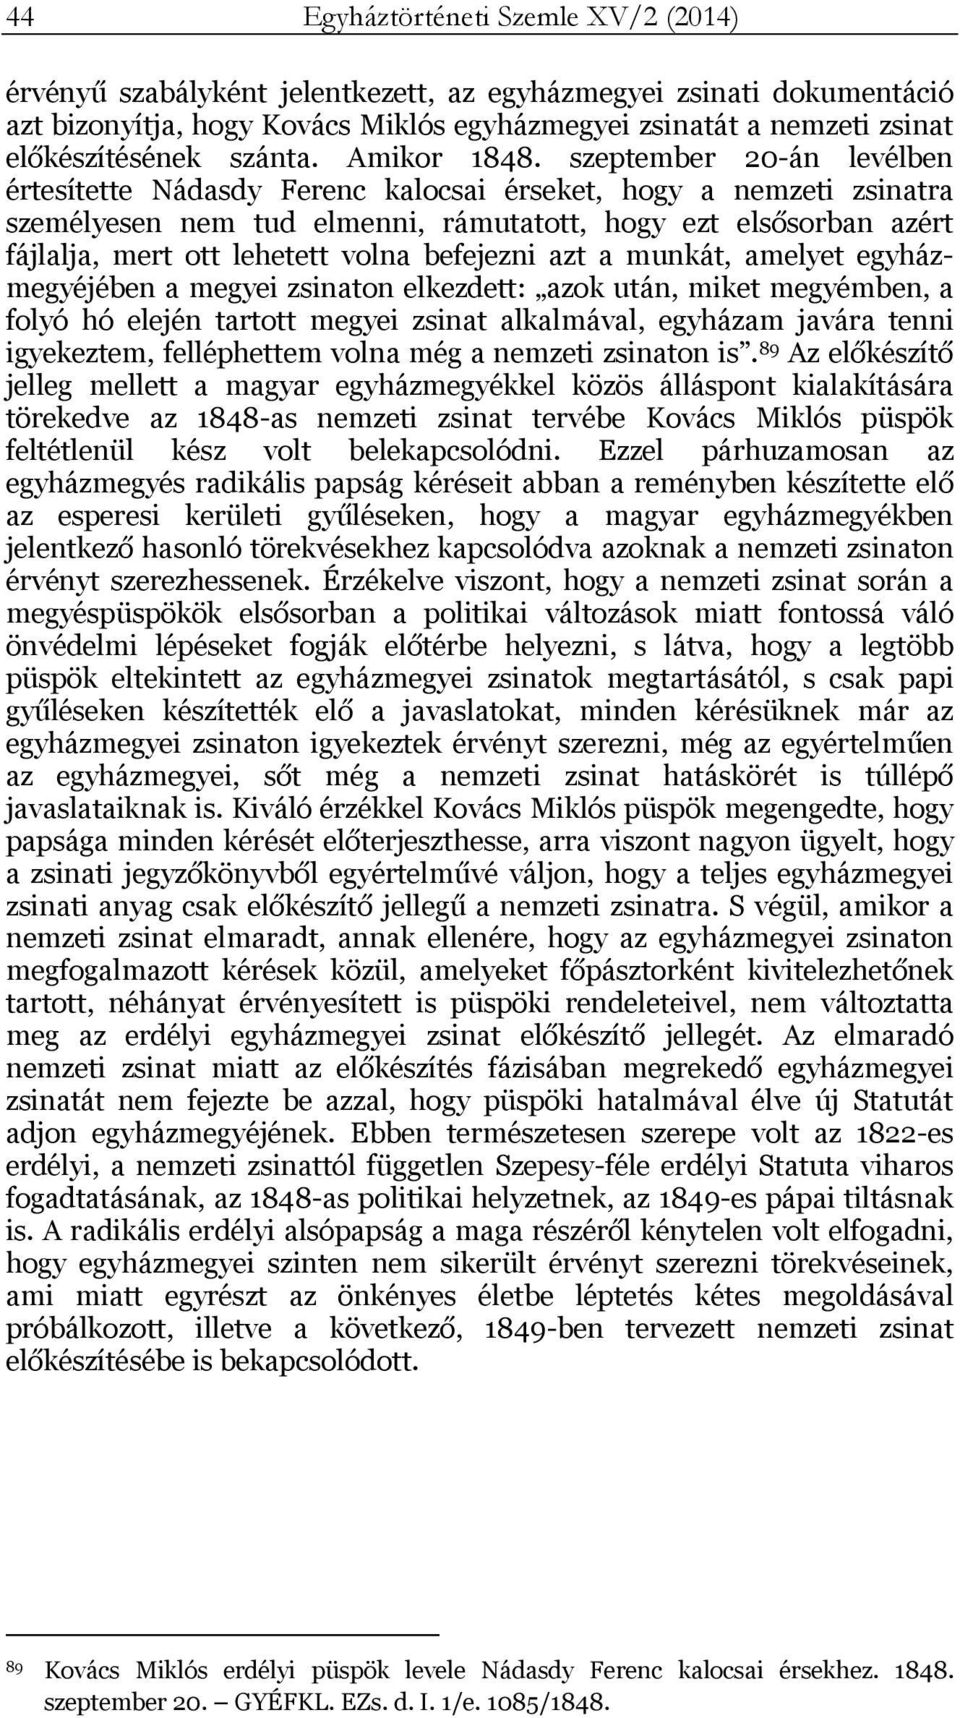 szeptember 20-án levélben értesítette Nádasdy Ferenc kalocsai érseket, hogy a nemzeti zsinatra személyesen nem tud elmenni, rámutatott, hogy ezt elsősorban azért fájlalja, mert ott lehetett volna